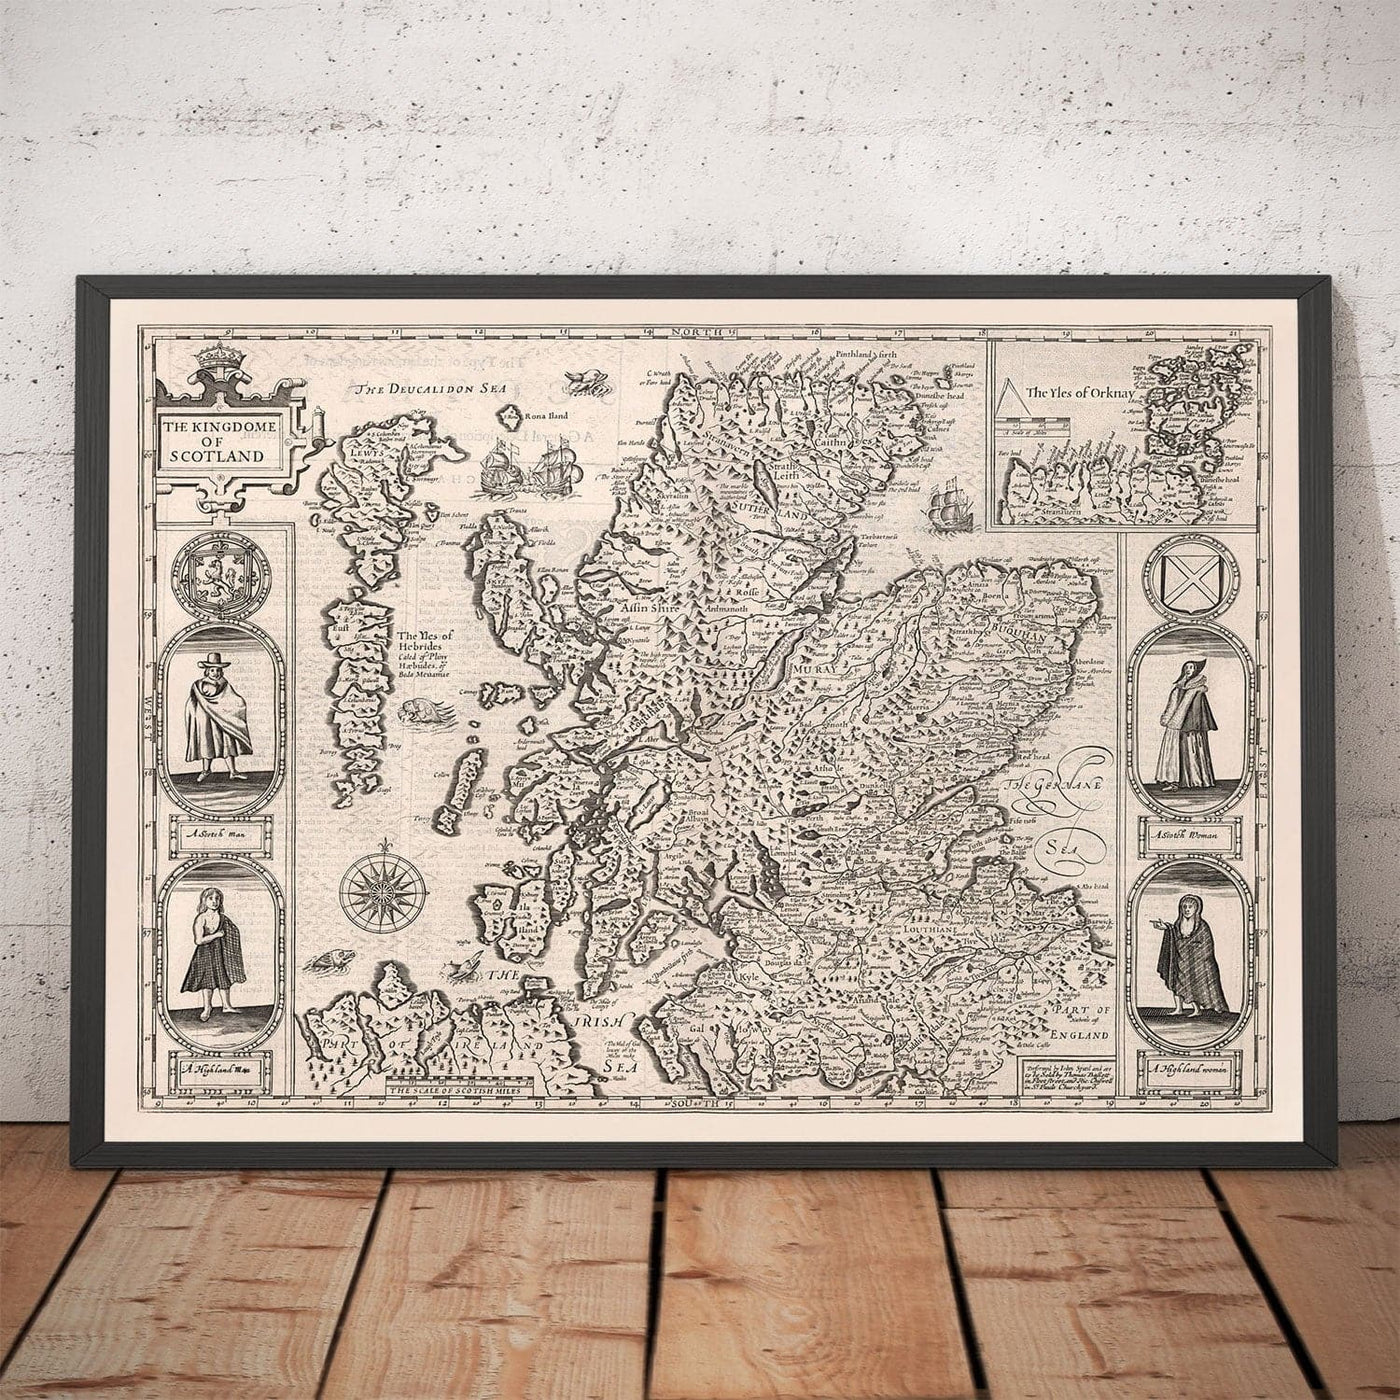 Mapa monocromo antiguo de Escocia, 1611 de John Speed ​​- Orkney, Shetland, Highlands, Hebrides exteriores, Skye, Loch Ness